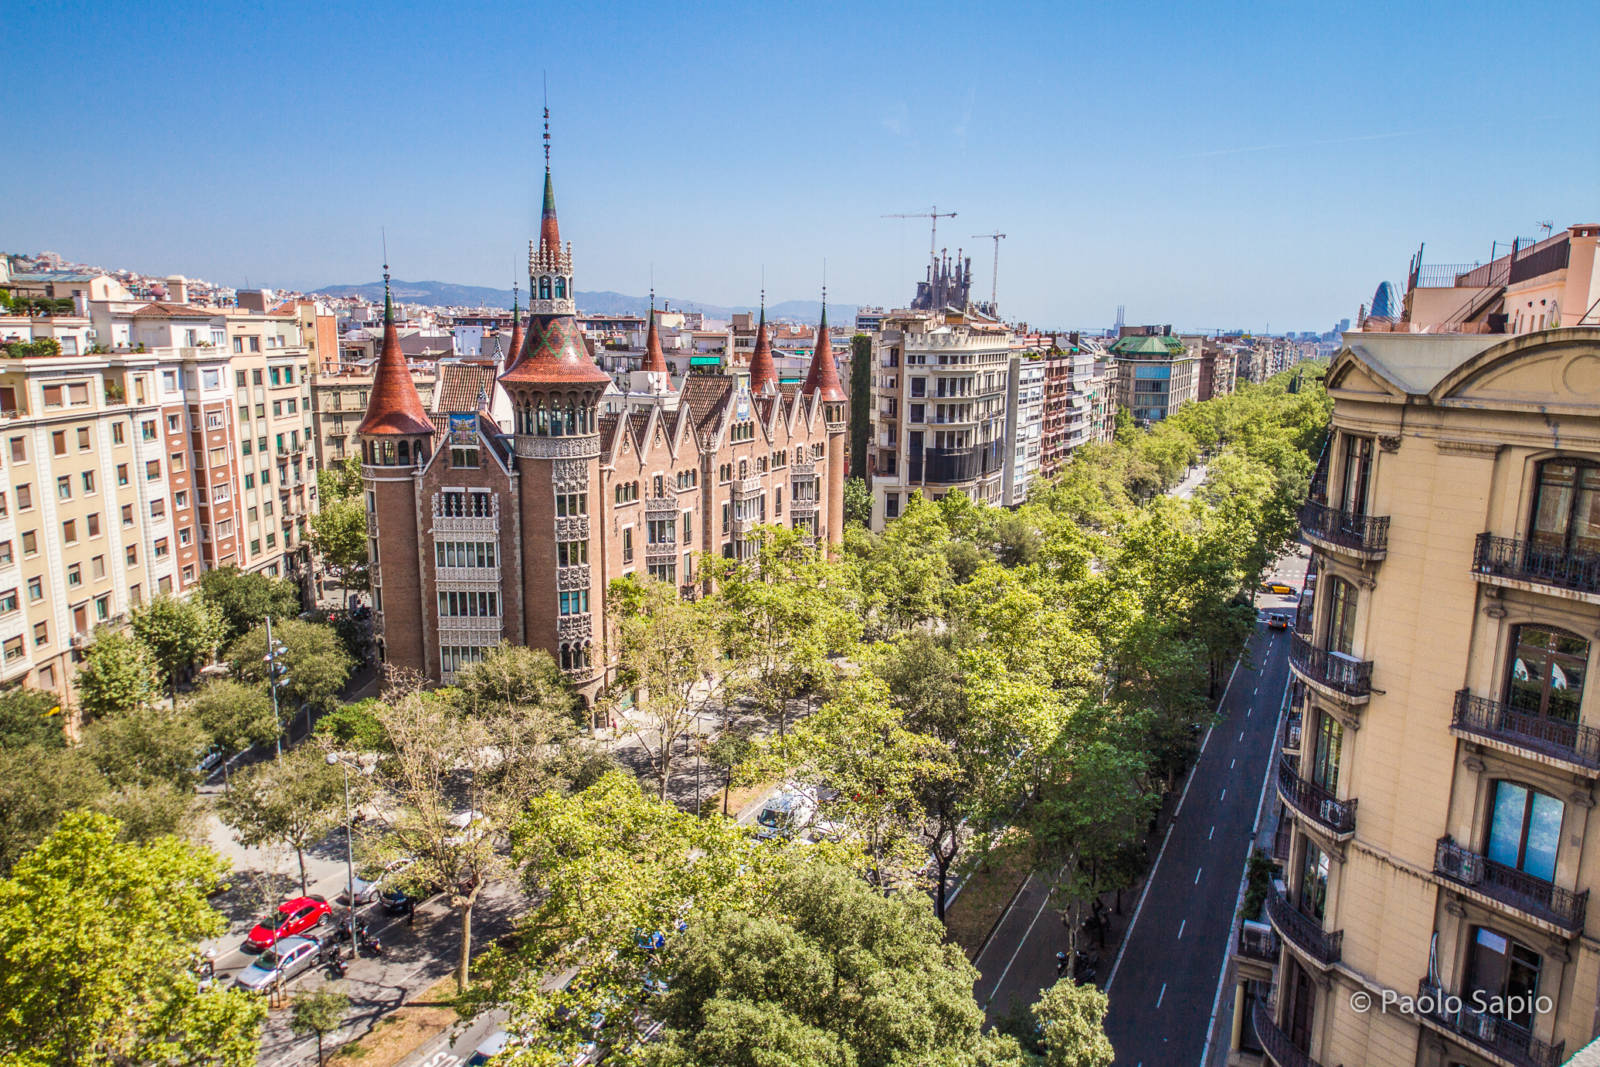 Stadtpalast im Eixample, Barcelona: La Casa de les Punxes